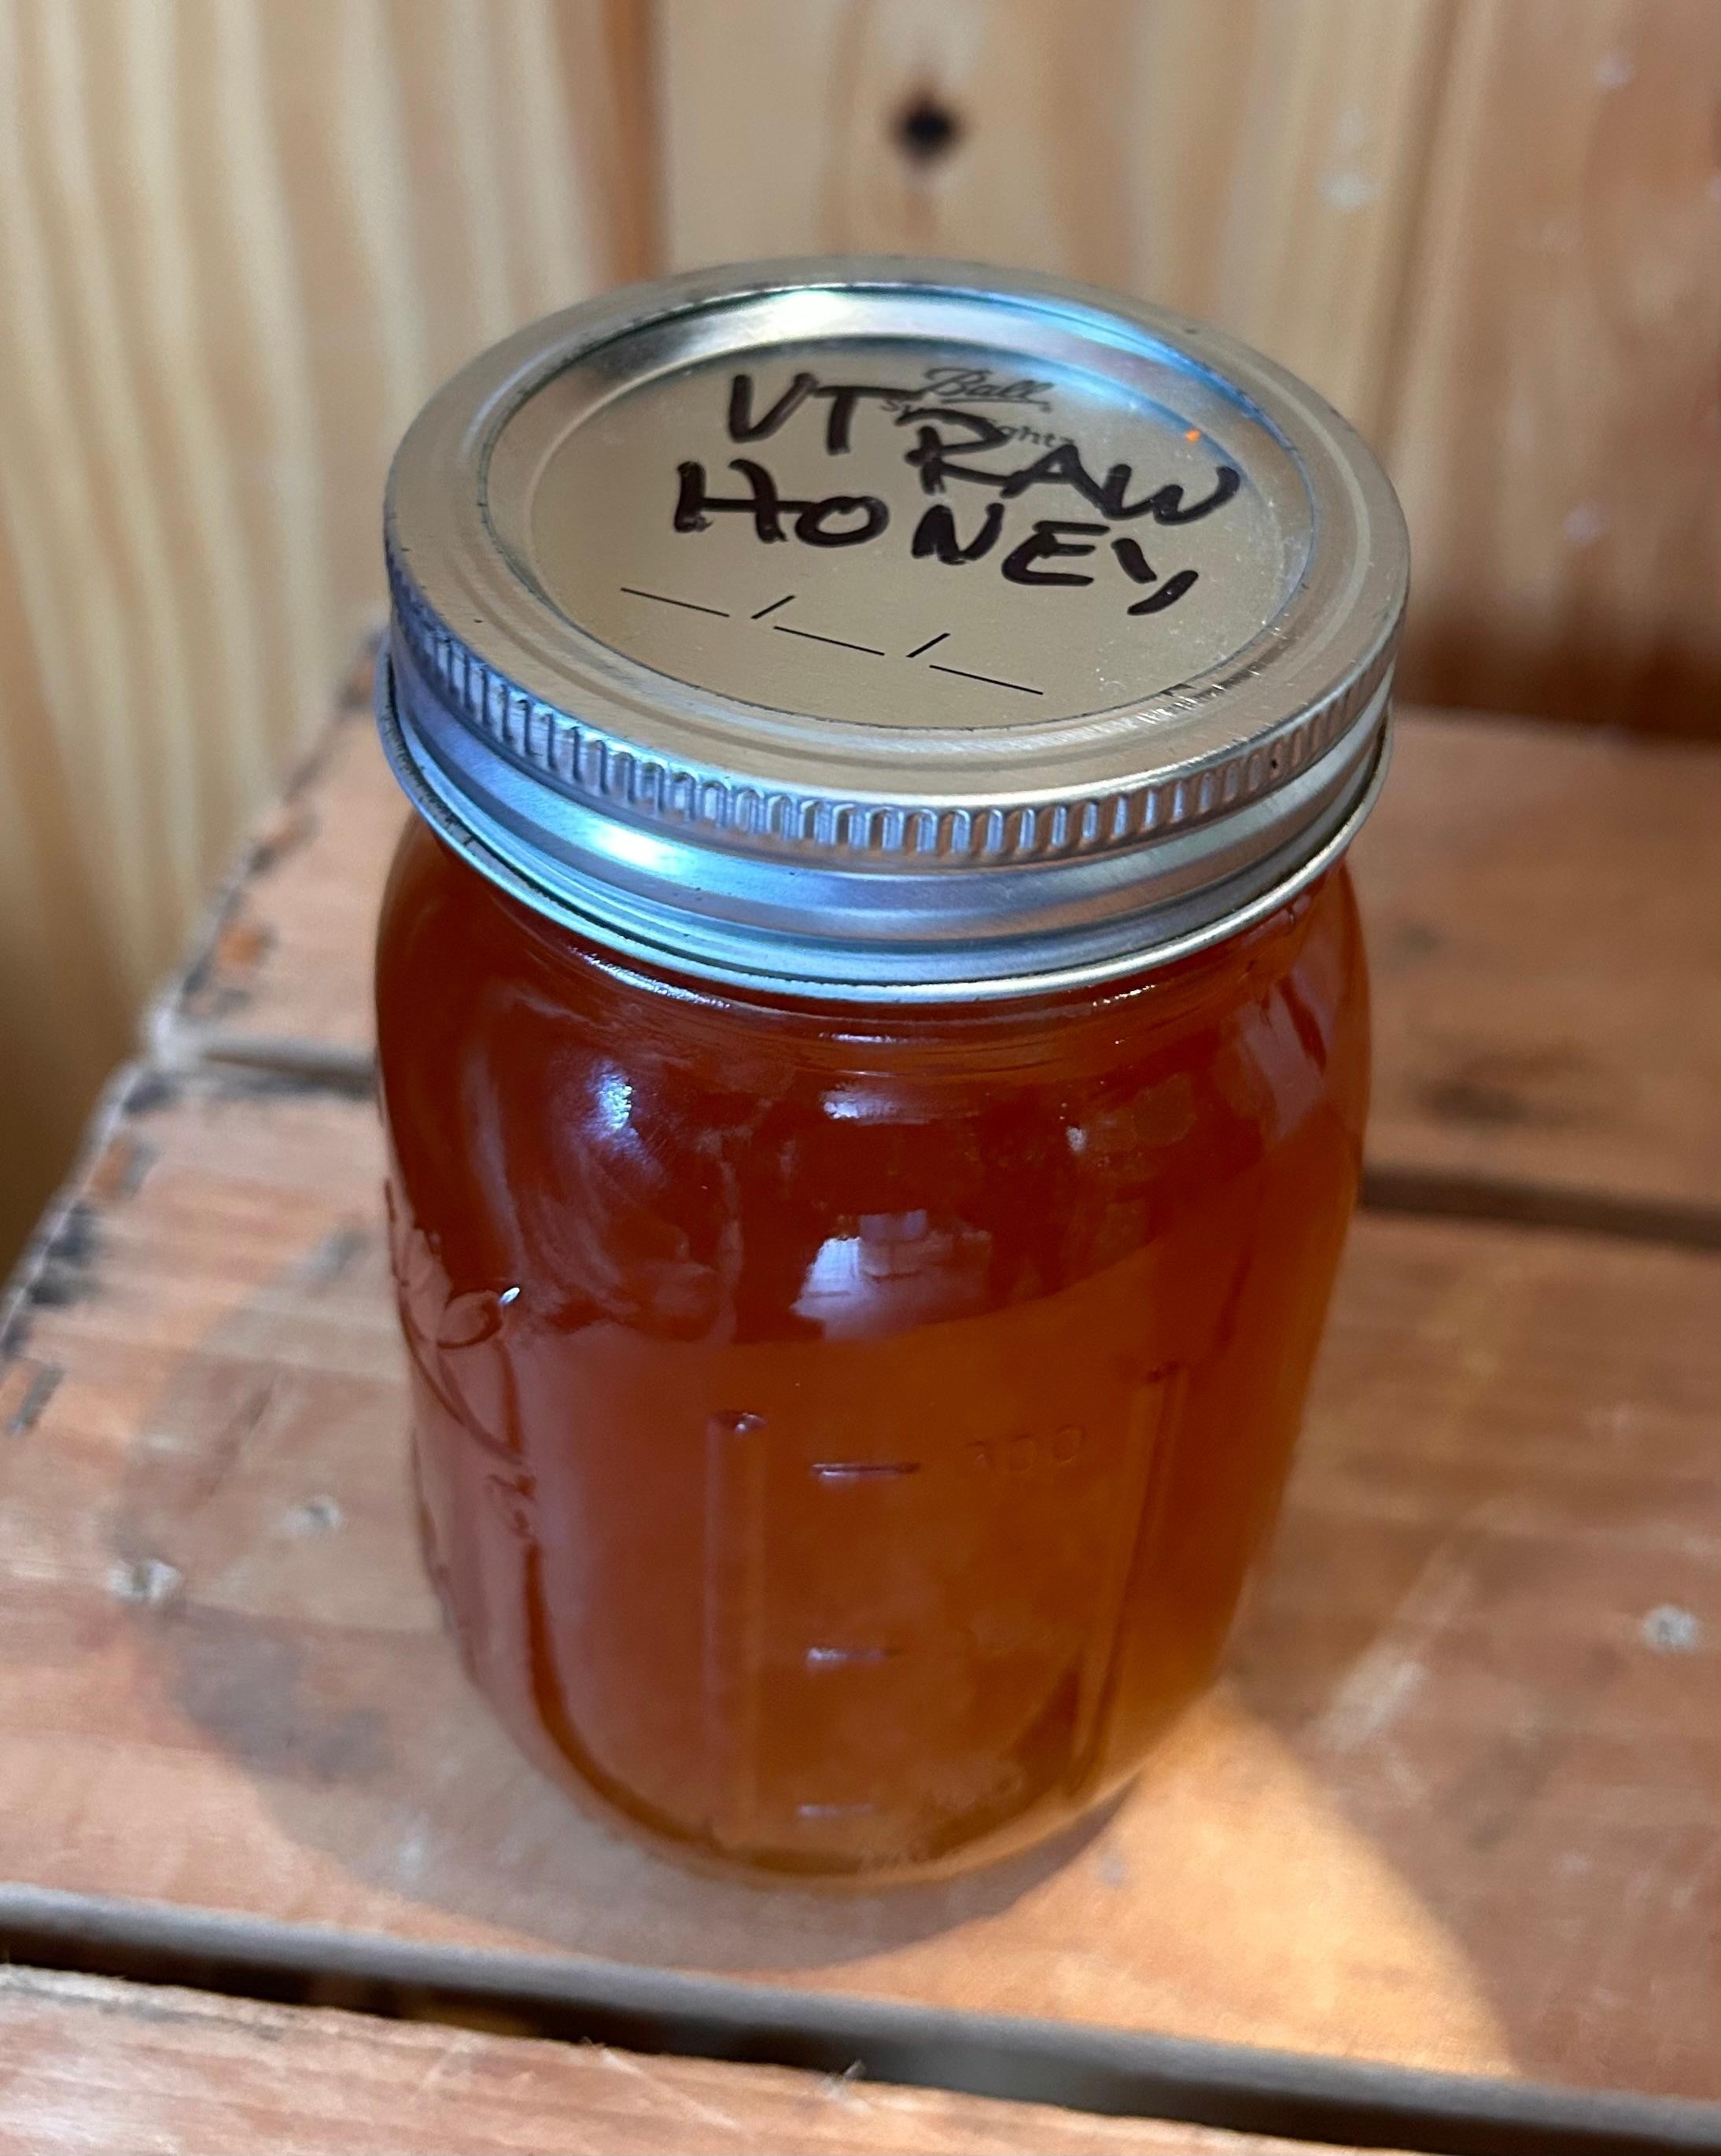 Raw Vt Honey